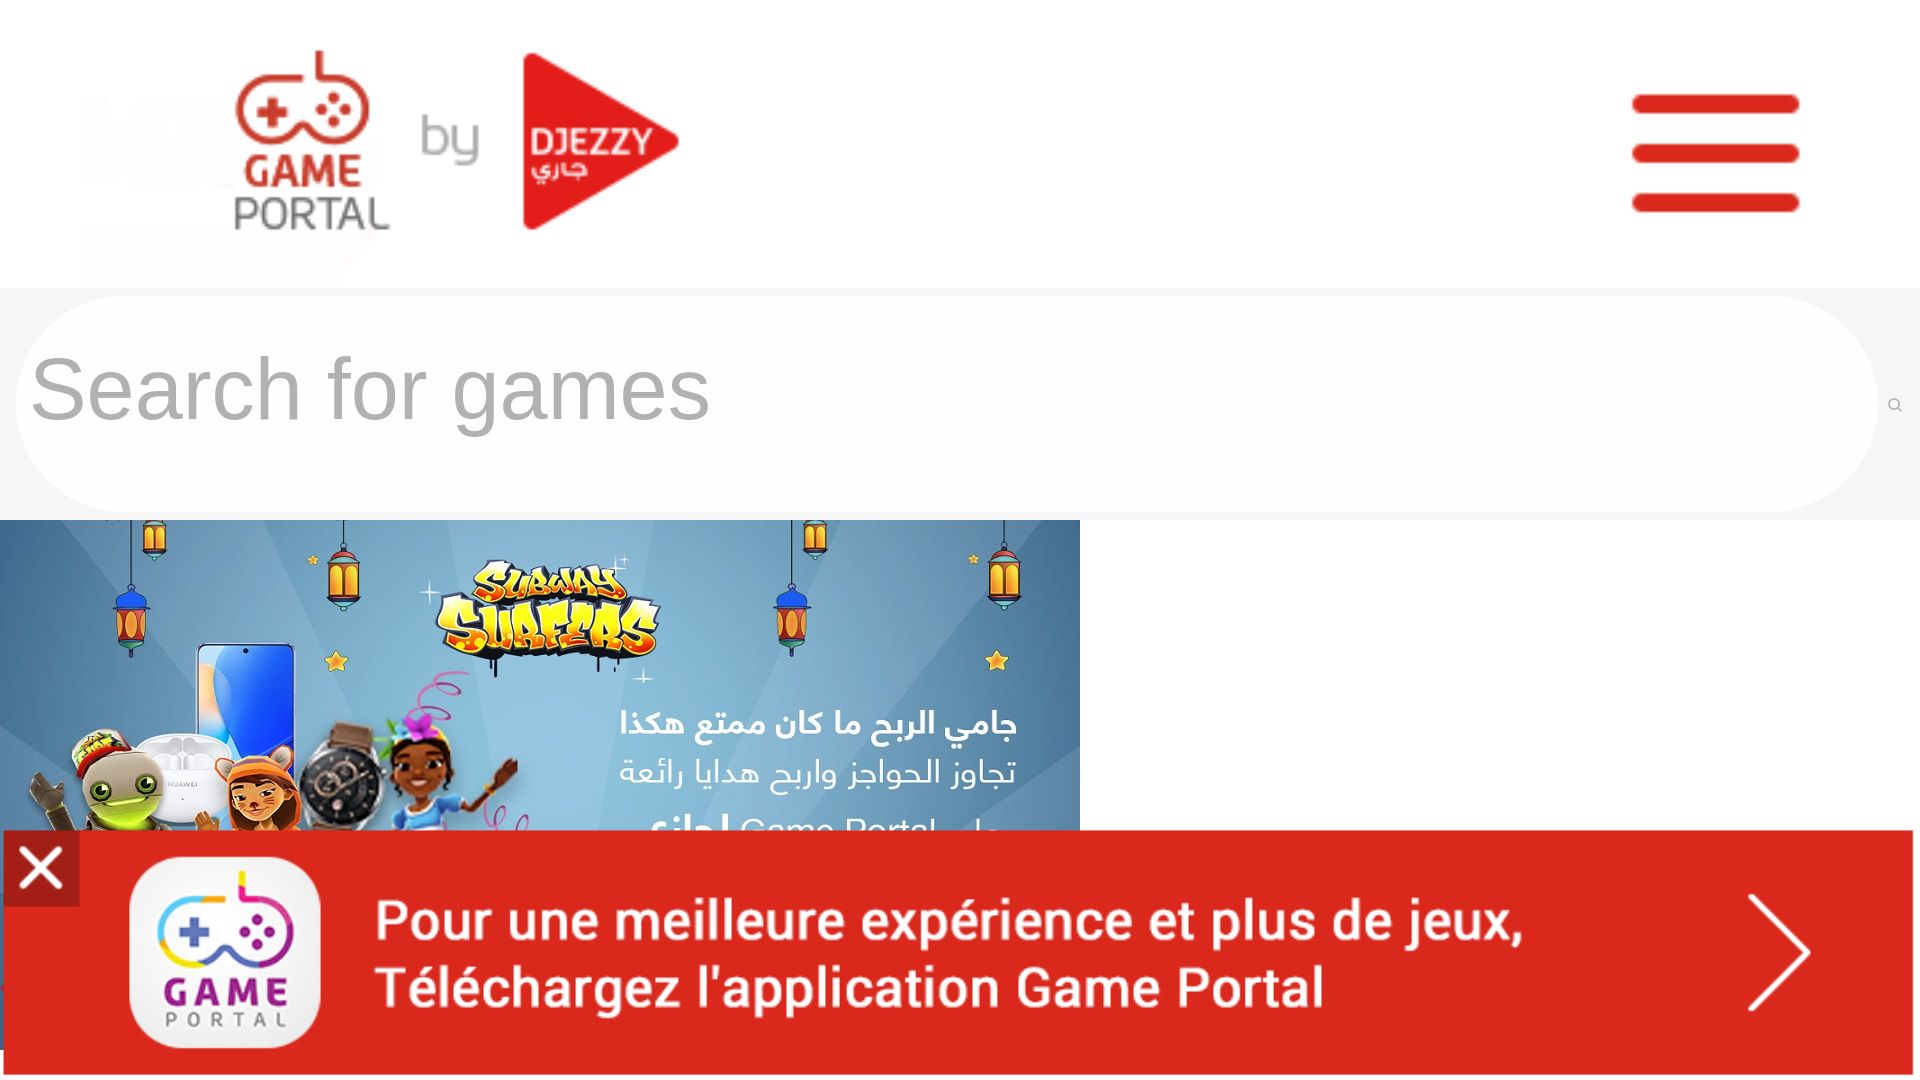 Website status gameportal.djezzy.dz is   ONLINE